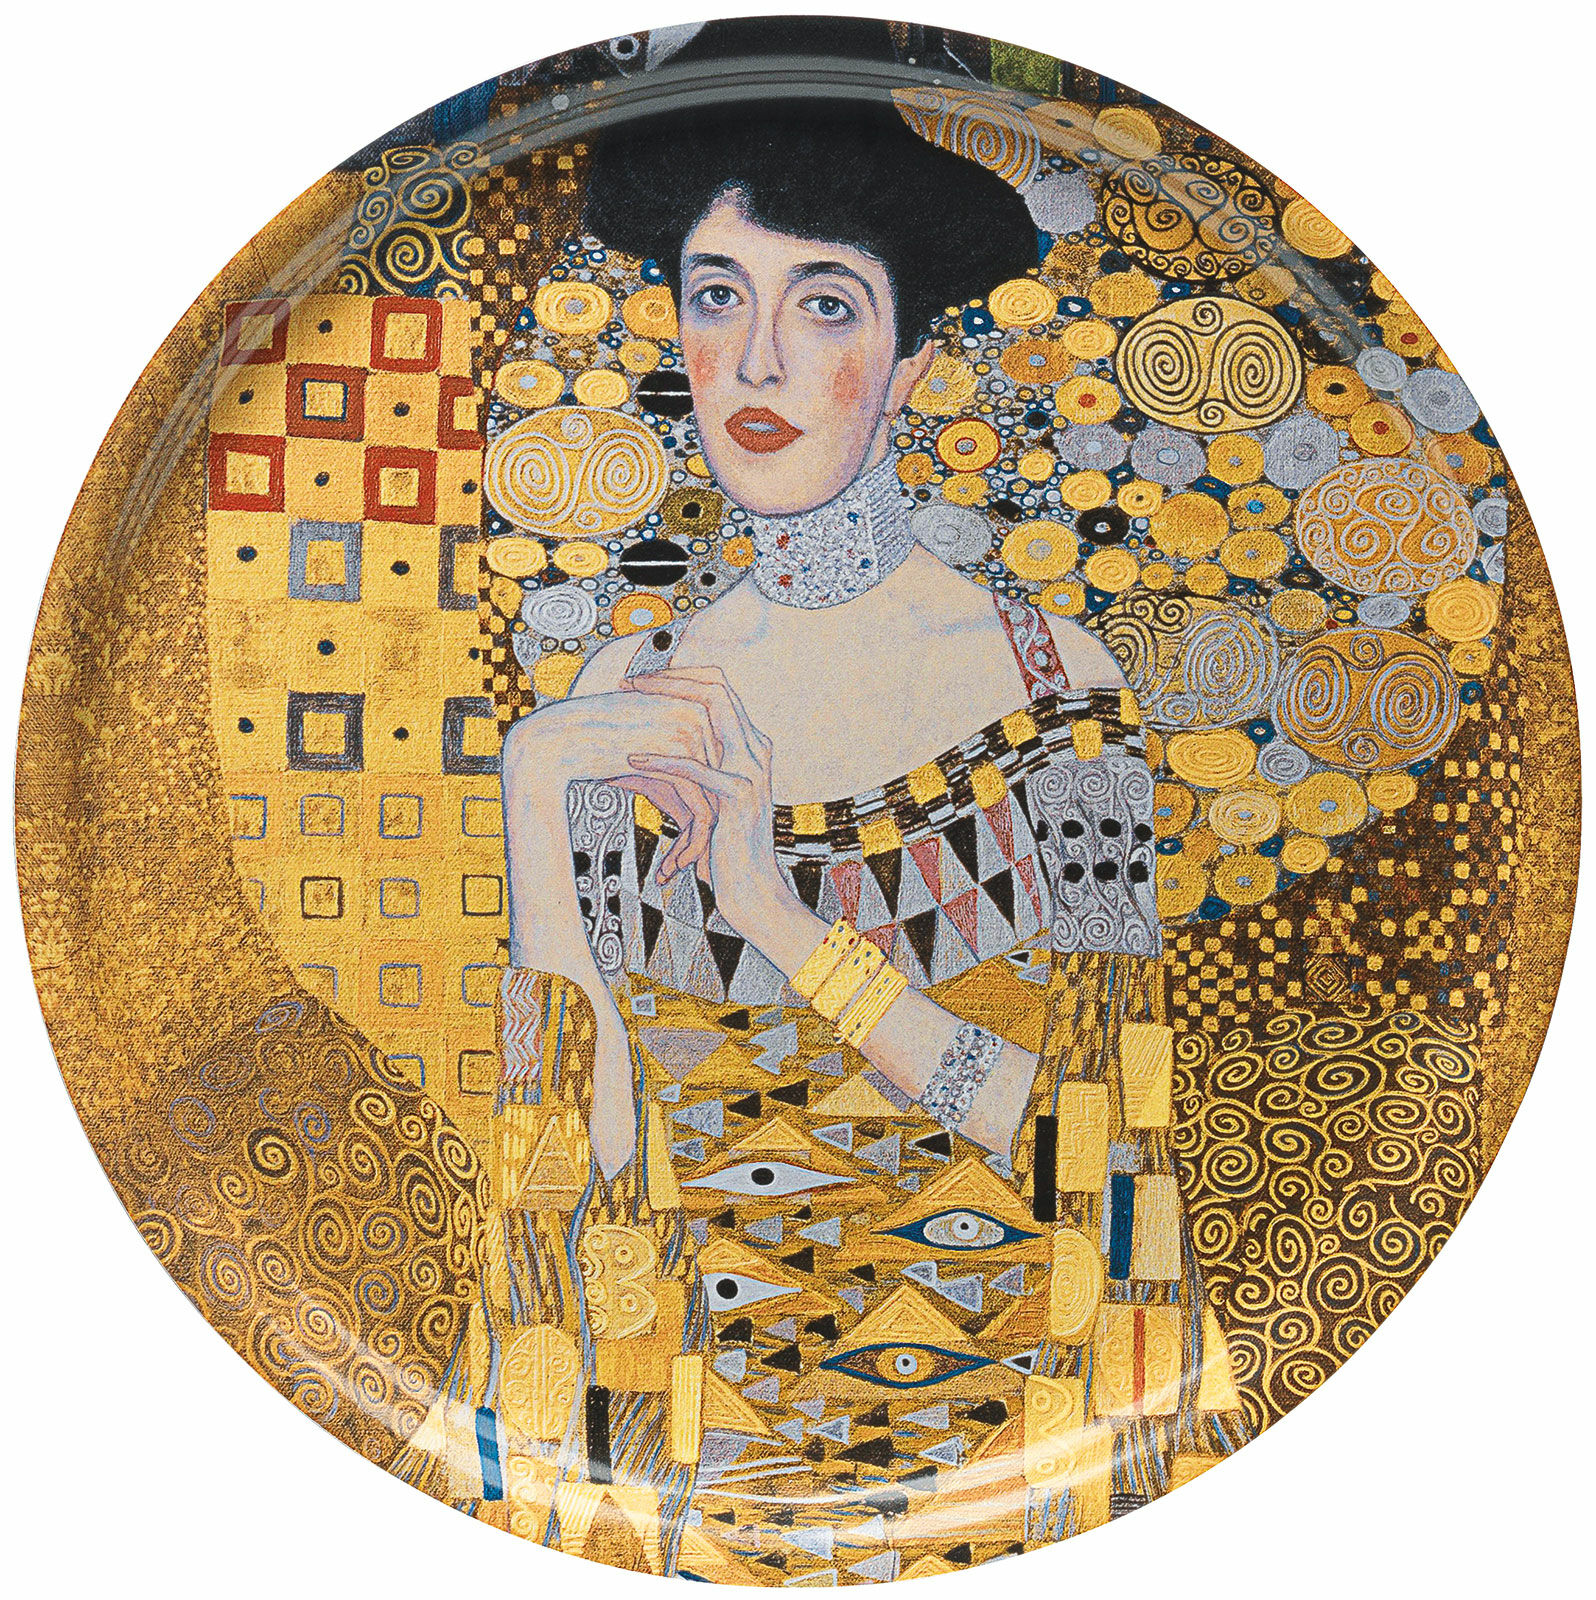 Wooden tray "Adele Bloch-Bauer" by Gustav Klimt